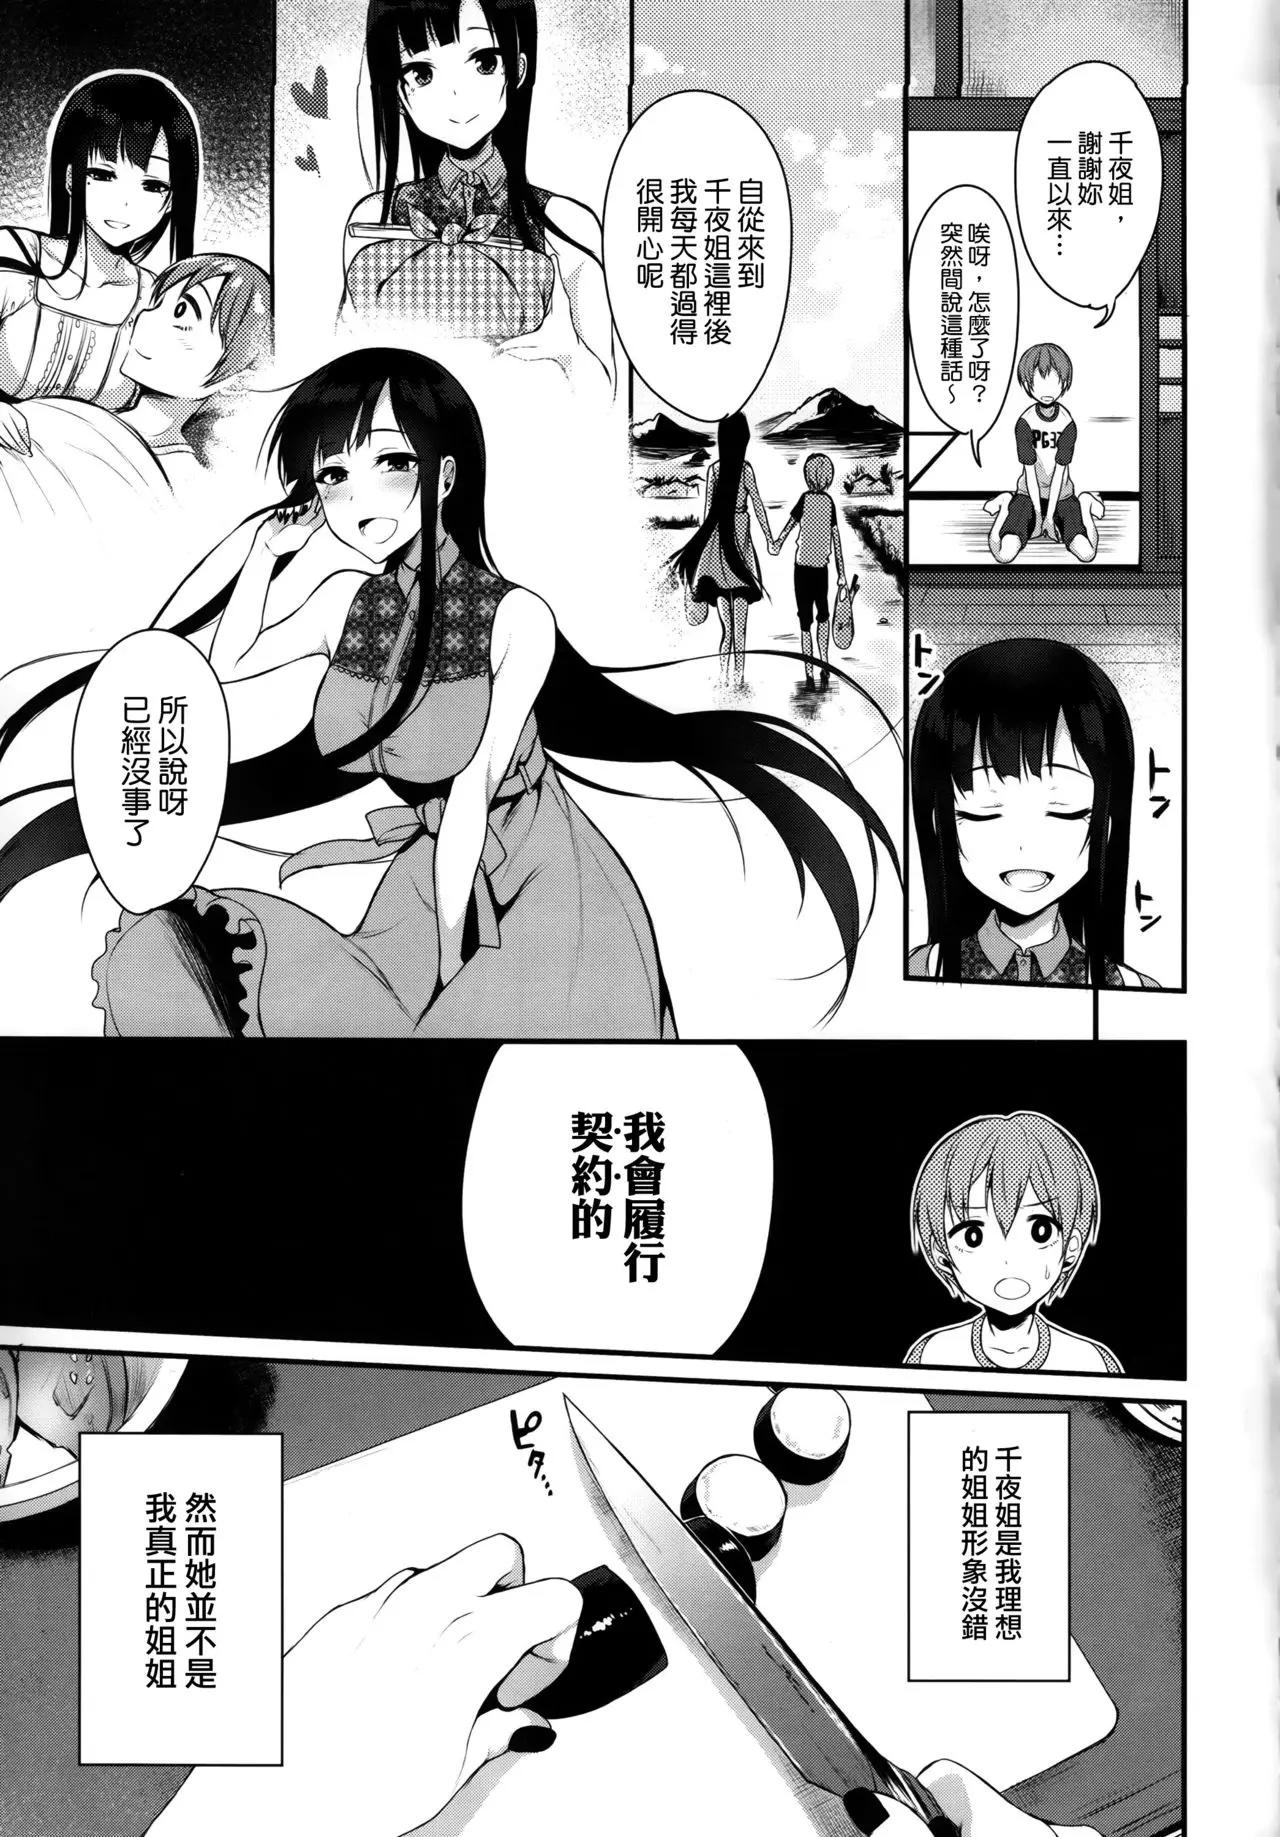 Erotic Ane Naru Mono 1-11 - Ane naru mono Job - Page 8